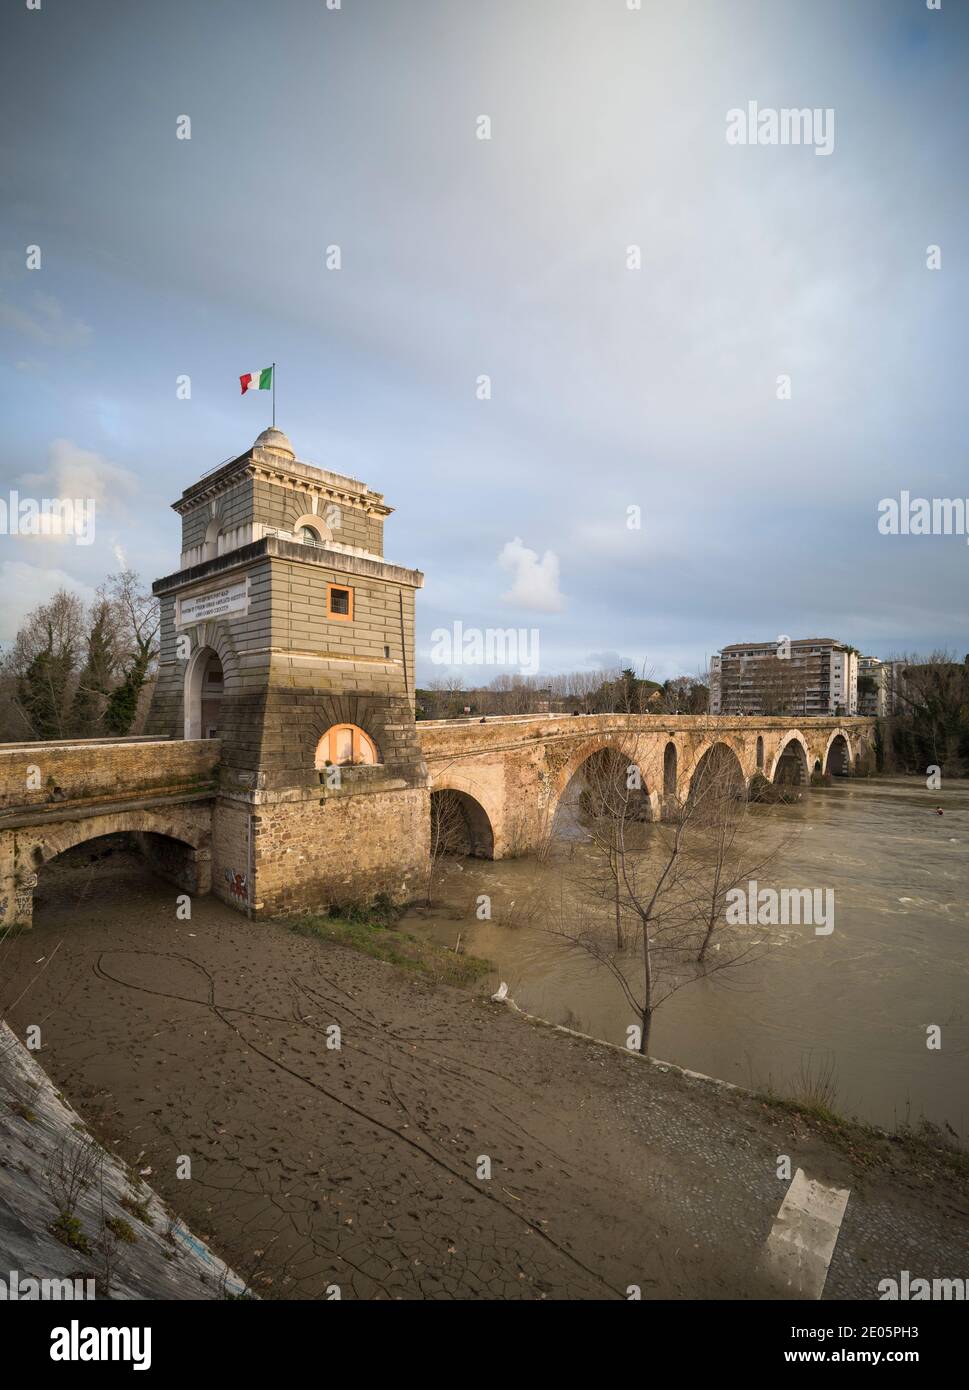 Rom. Italien. Die Brücke von Milvian (Ponte Milvio) überquert den Tiber (Fiume Tevere) im Norden Roms und war Schauplatz der berühmten Schlacht von Milvi Stockfoto